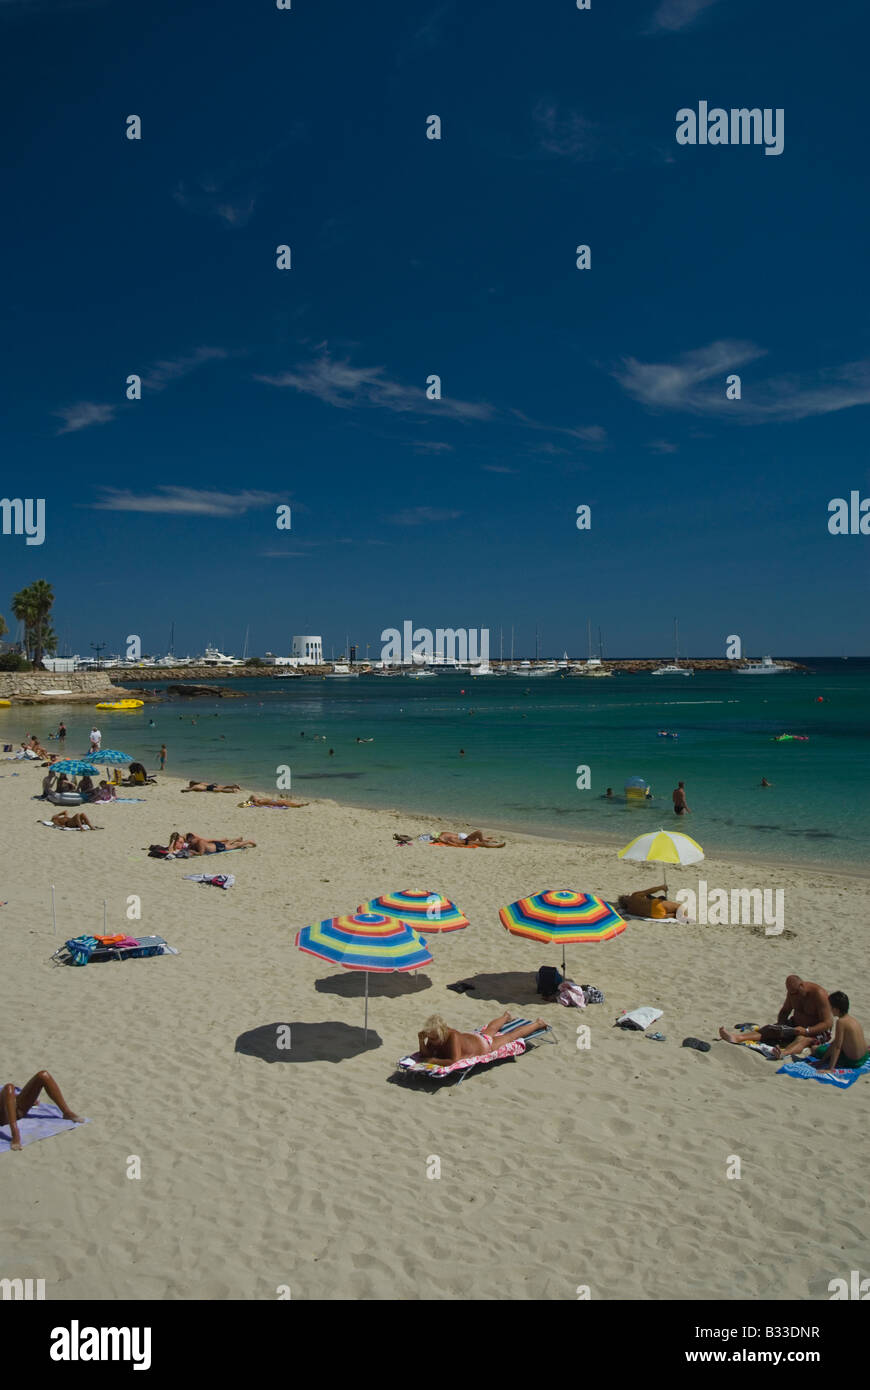 Strand von Santa Eulalia, Ibiza, Spanien mit Yacht-Hafen im Hintergrund Stockfoto